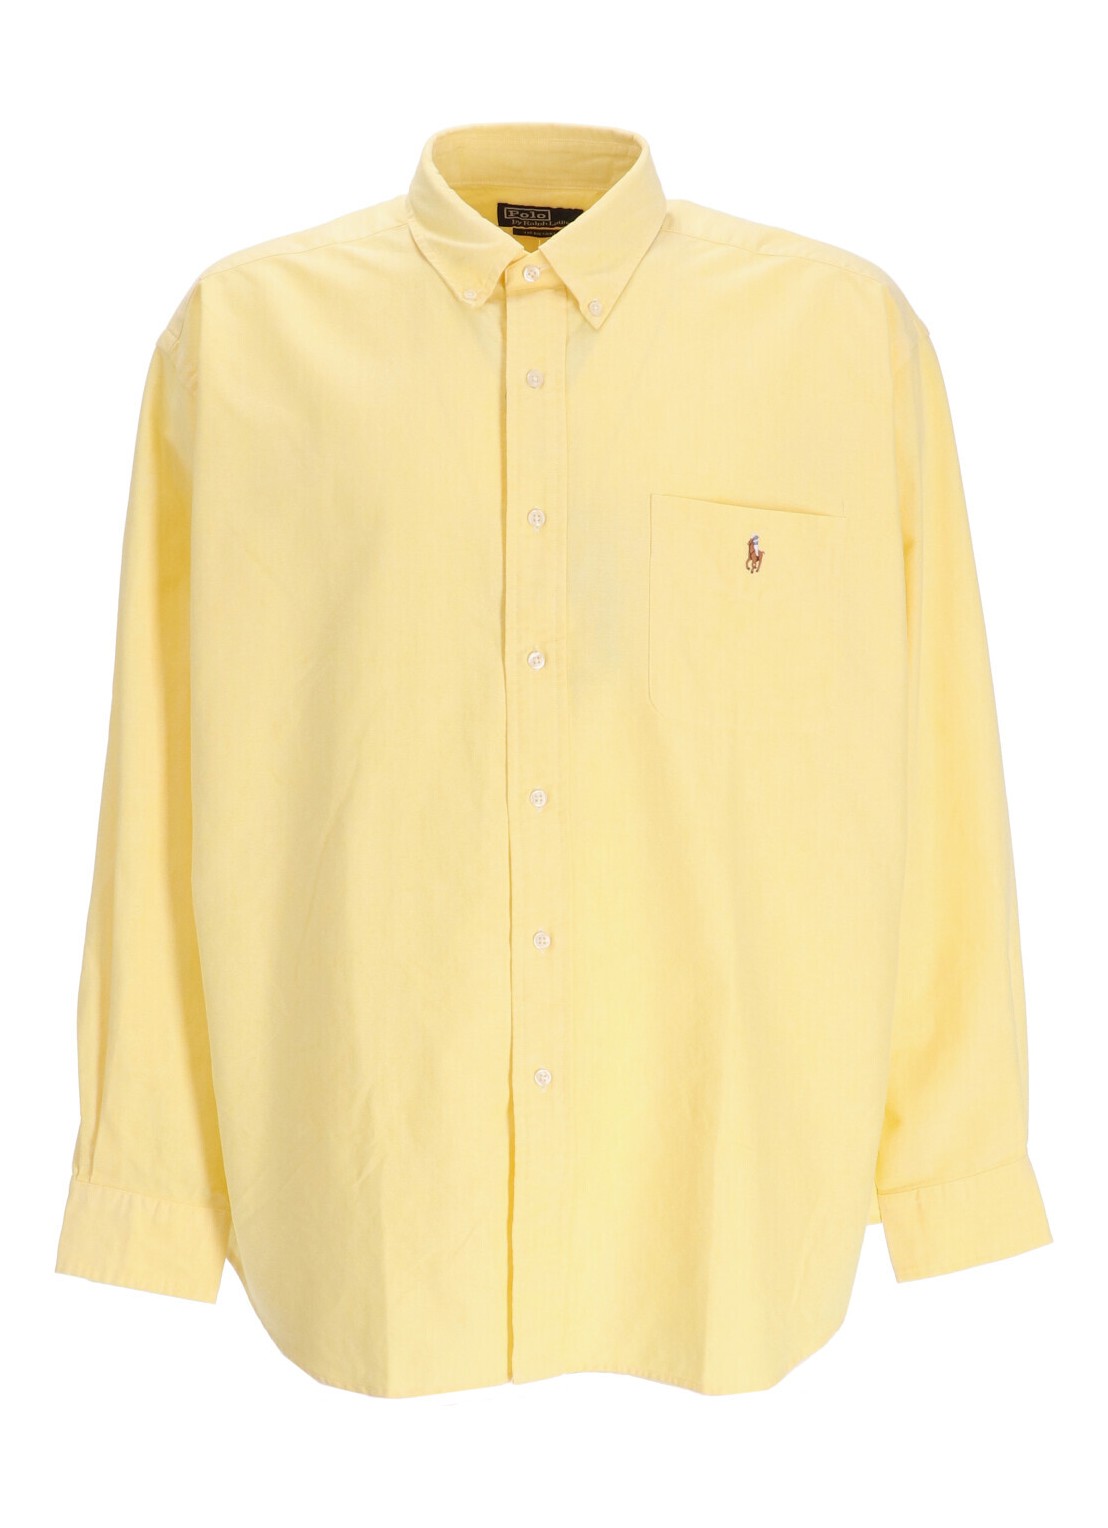 Camiseria polo ralph lauren shirt man cubdpppks-long sleeve-sport shirt 710916611002 yellow oxford t